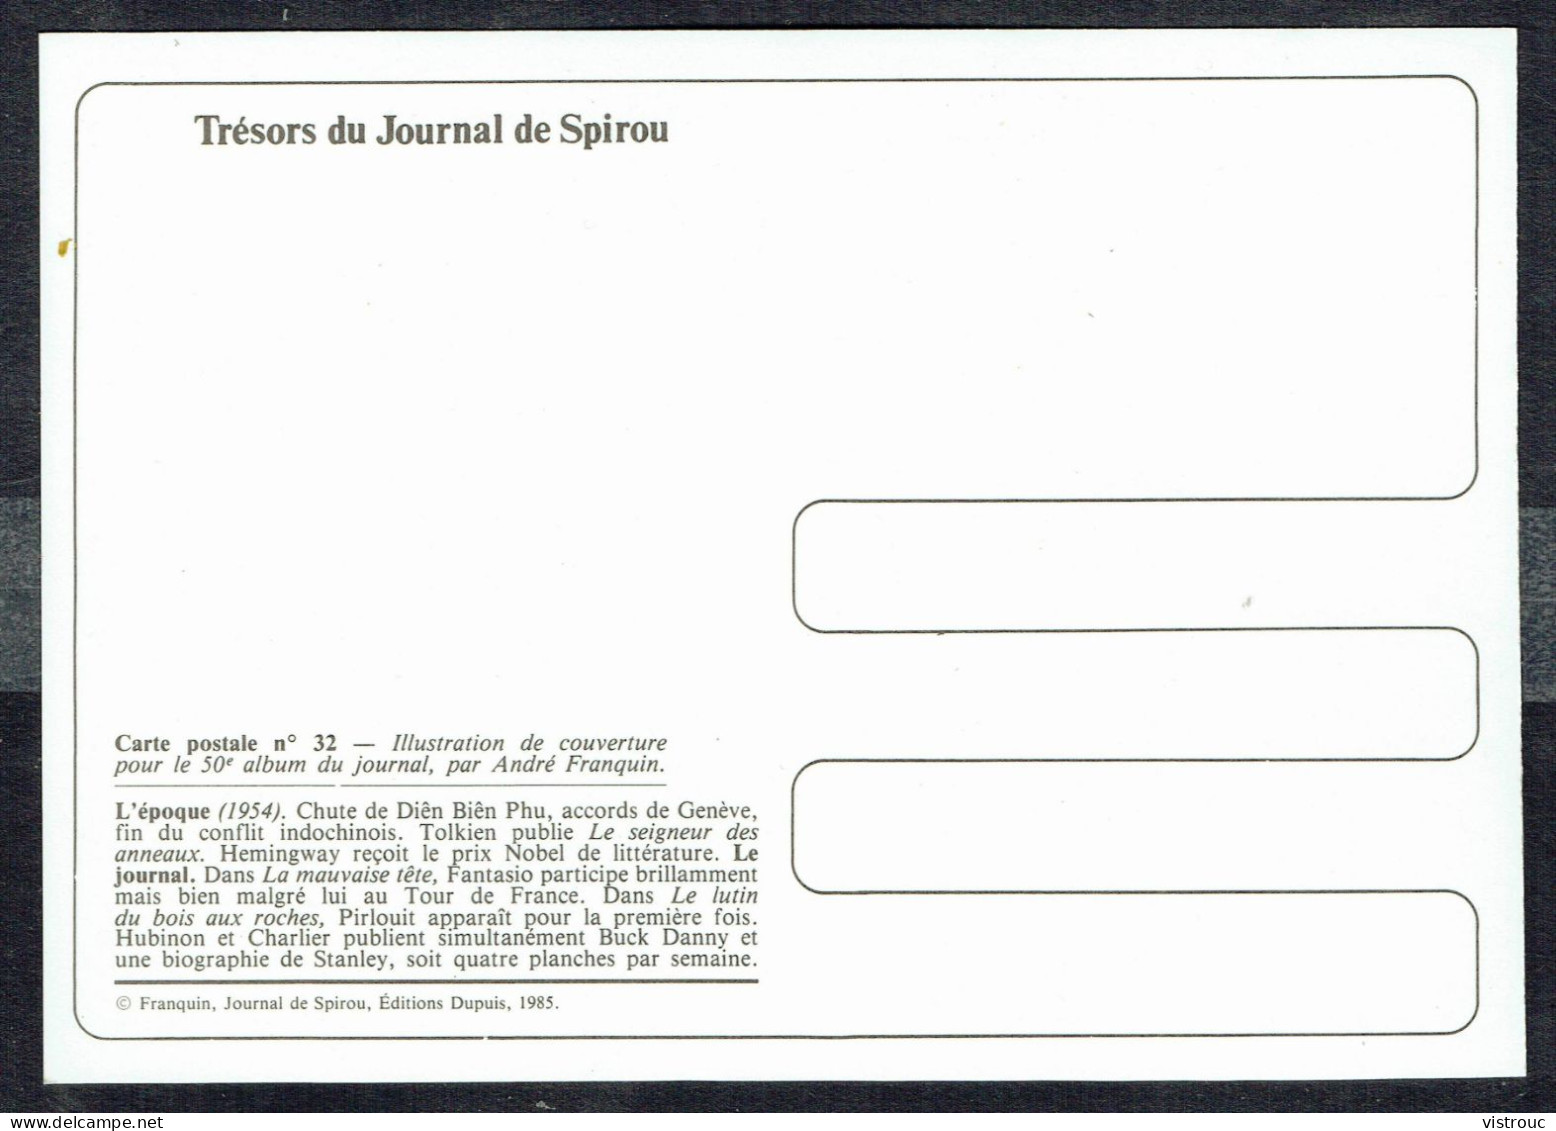 SPIROU - CP N° 32 : Illustration Couverture Album N° 50 De FRANQUIN - Non Circulé - Not Circulated - Ed. DUPUIS - 1985. - Comicfiguren